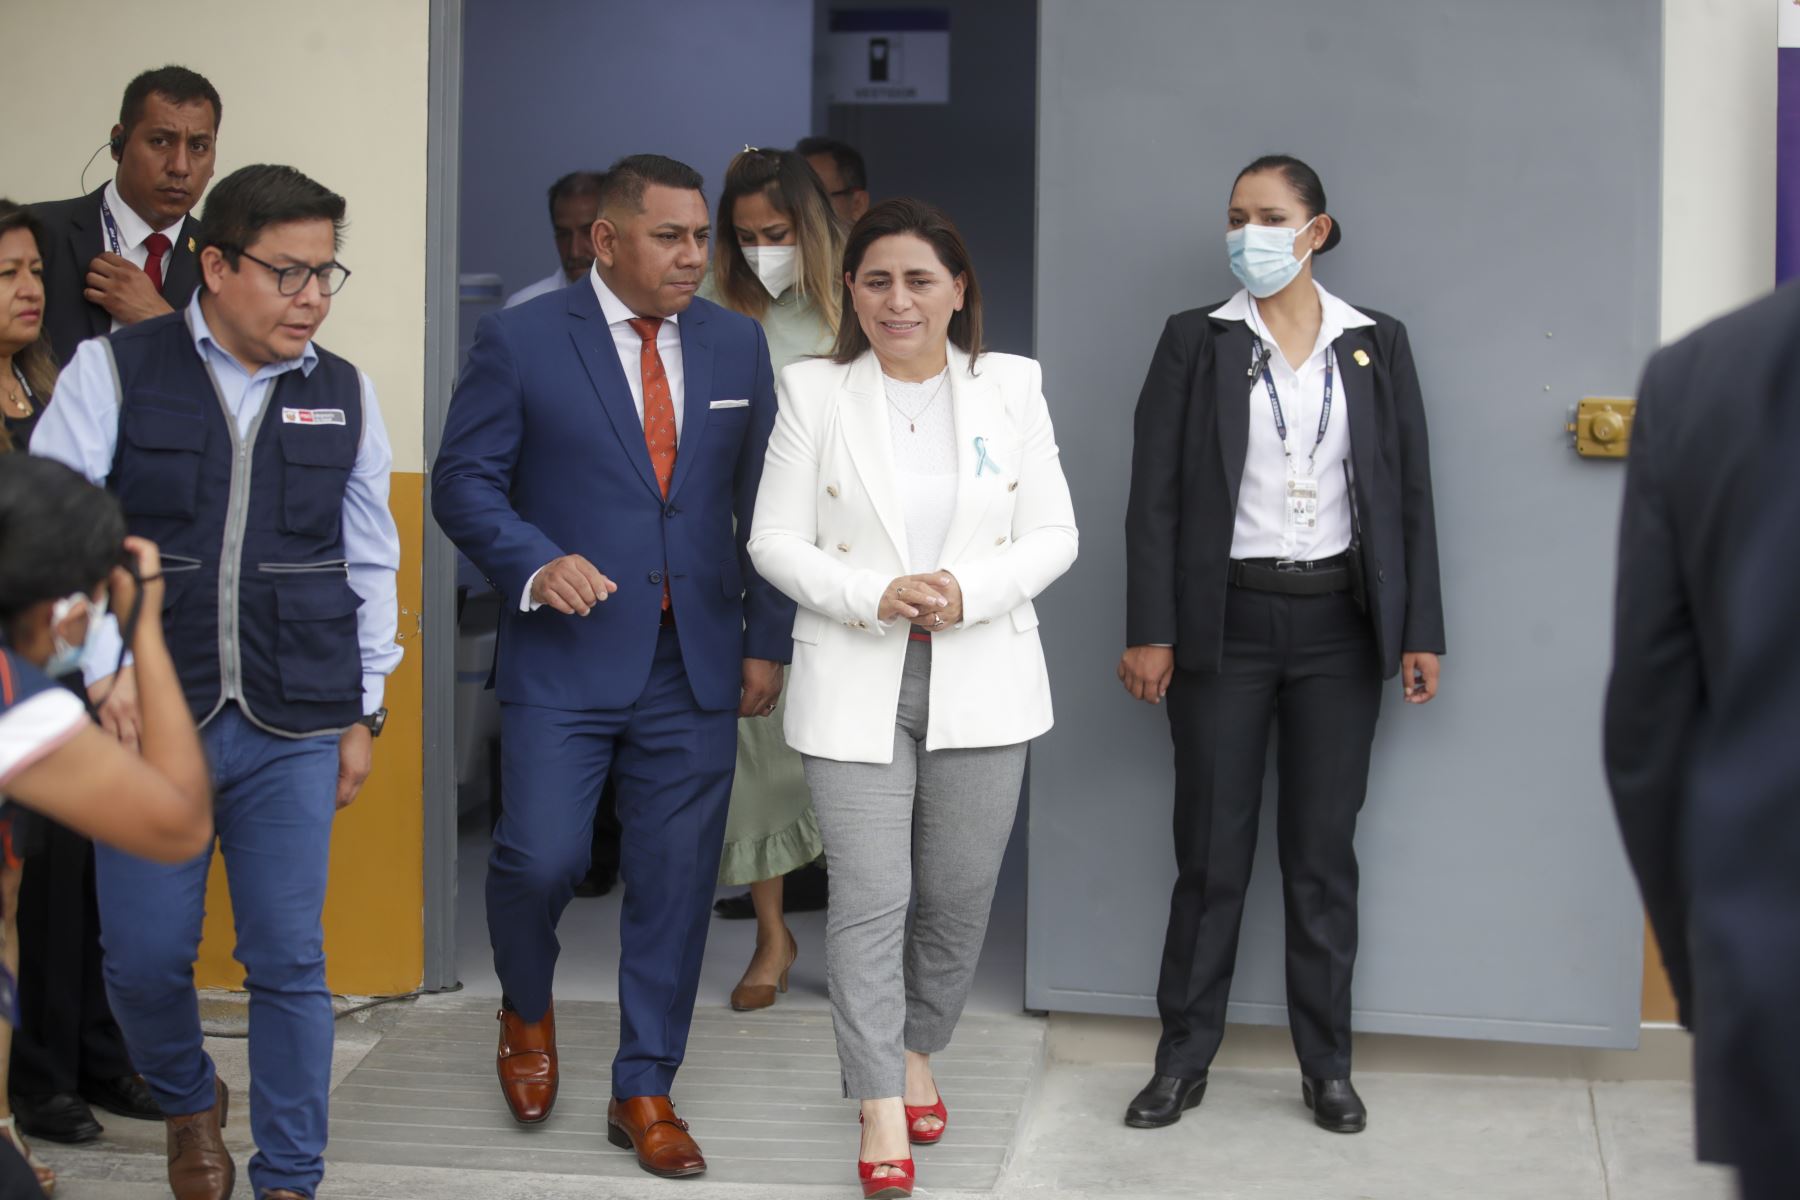 La ministra de Salud, Rosa Gutiérrez,  inauguró un equipo de densitometría ósea en el hospital Cayetano Heredia, el cual beneficiará a los pacientes de Lima Norte.

Foto: ANDINA/Juan Carlos Guzmán Negrini.